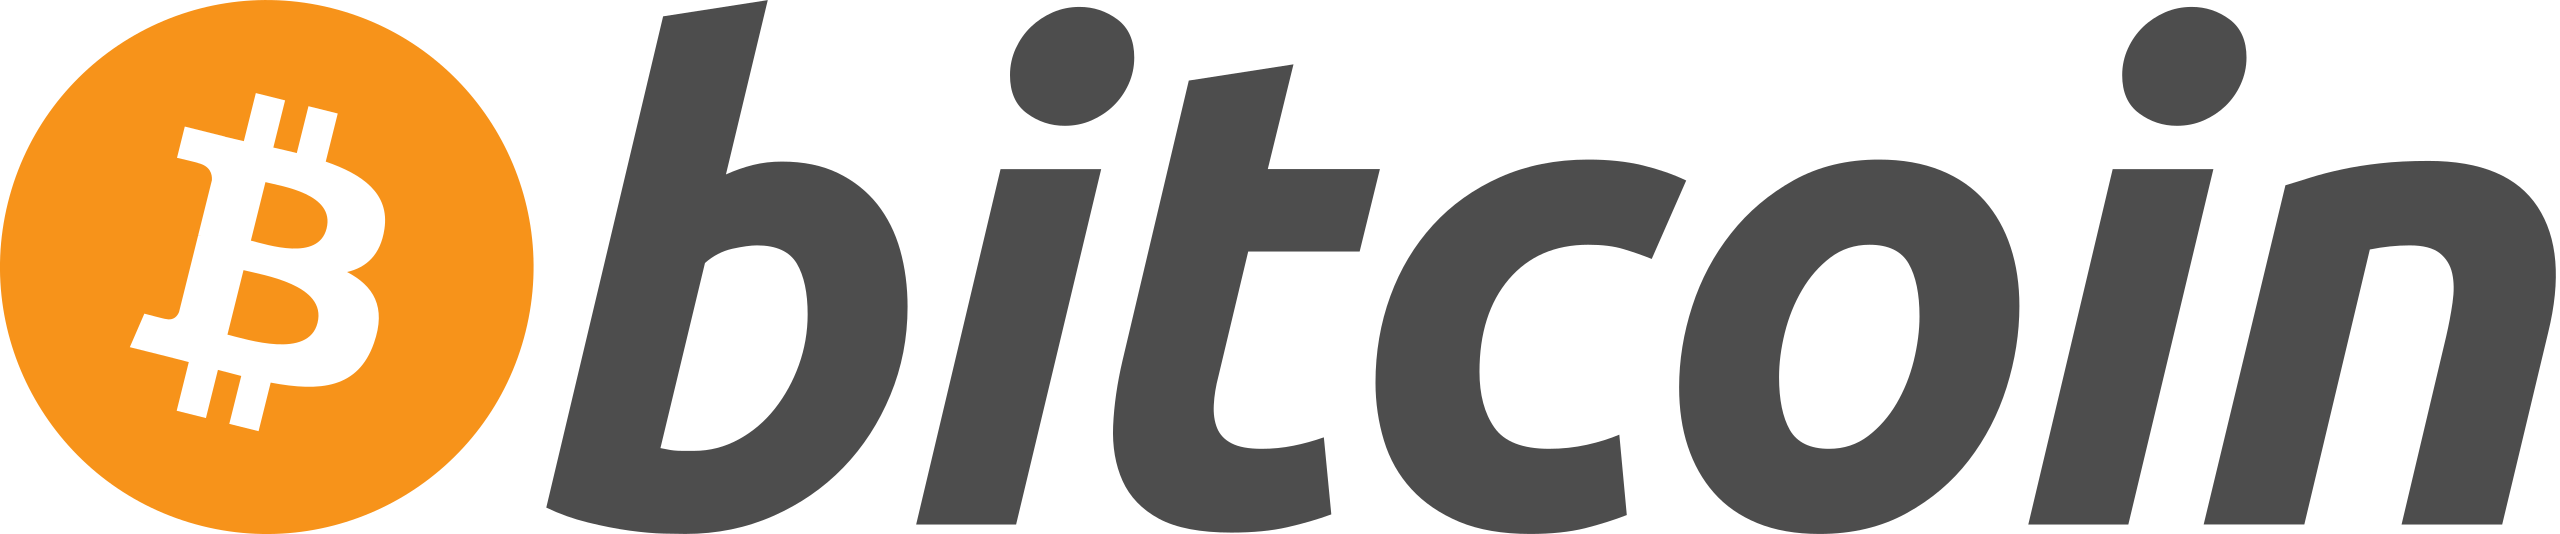 An image of the Bitcoin logo